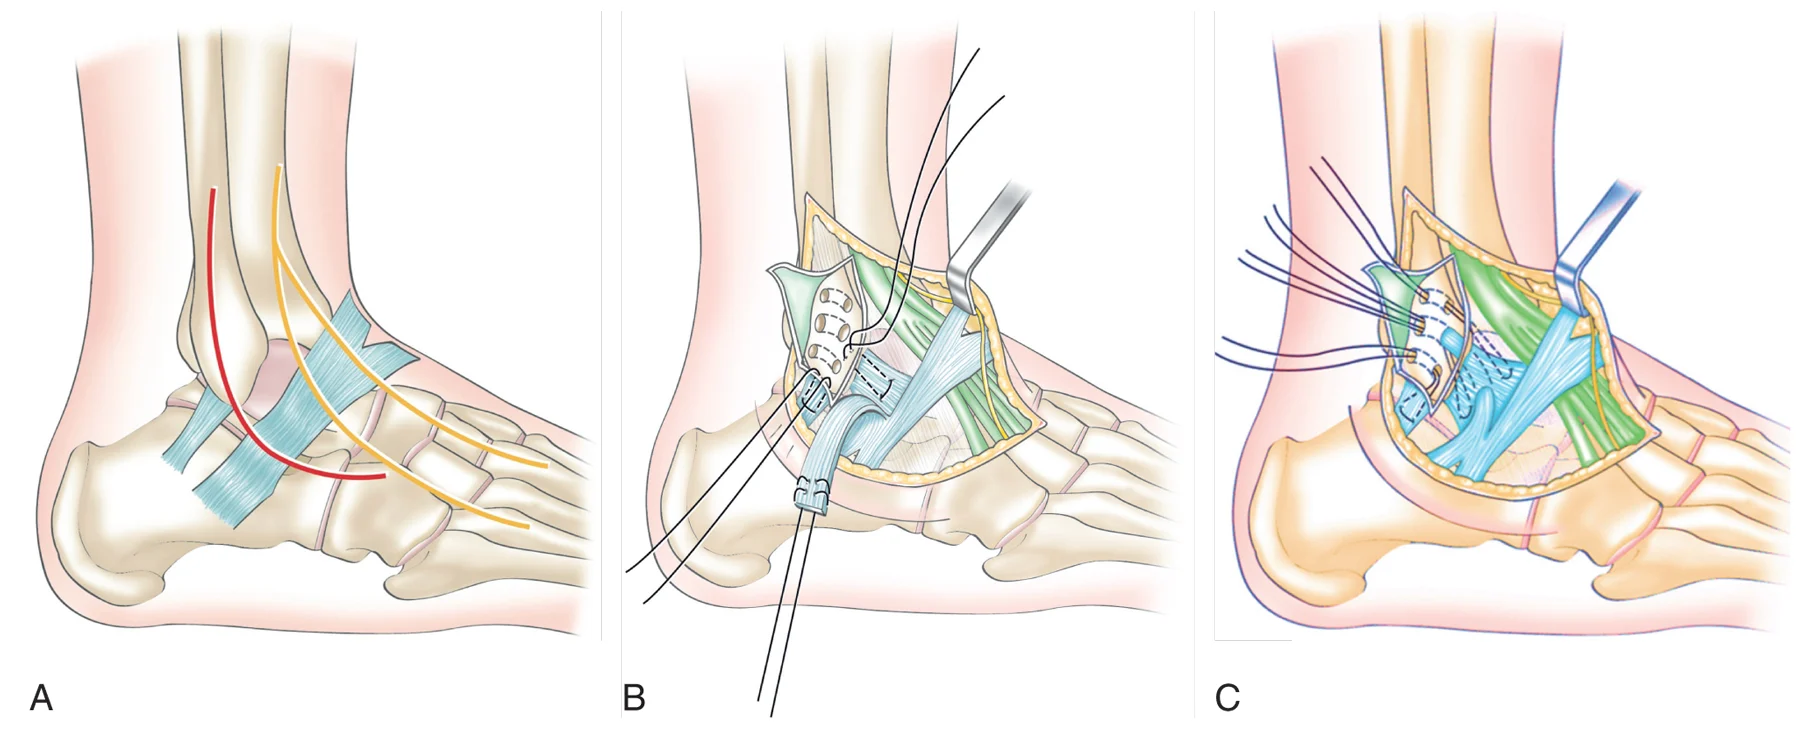 Figure 20.8 (Cliquez pour agrandir) Réparation anatomique avec renfort au ligament frondiforme